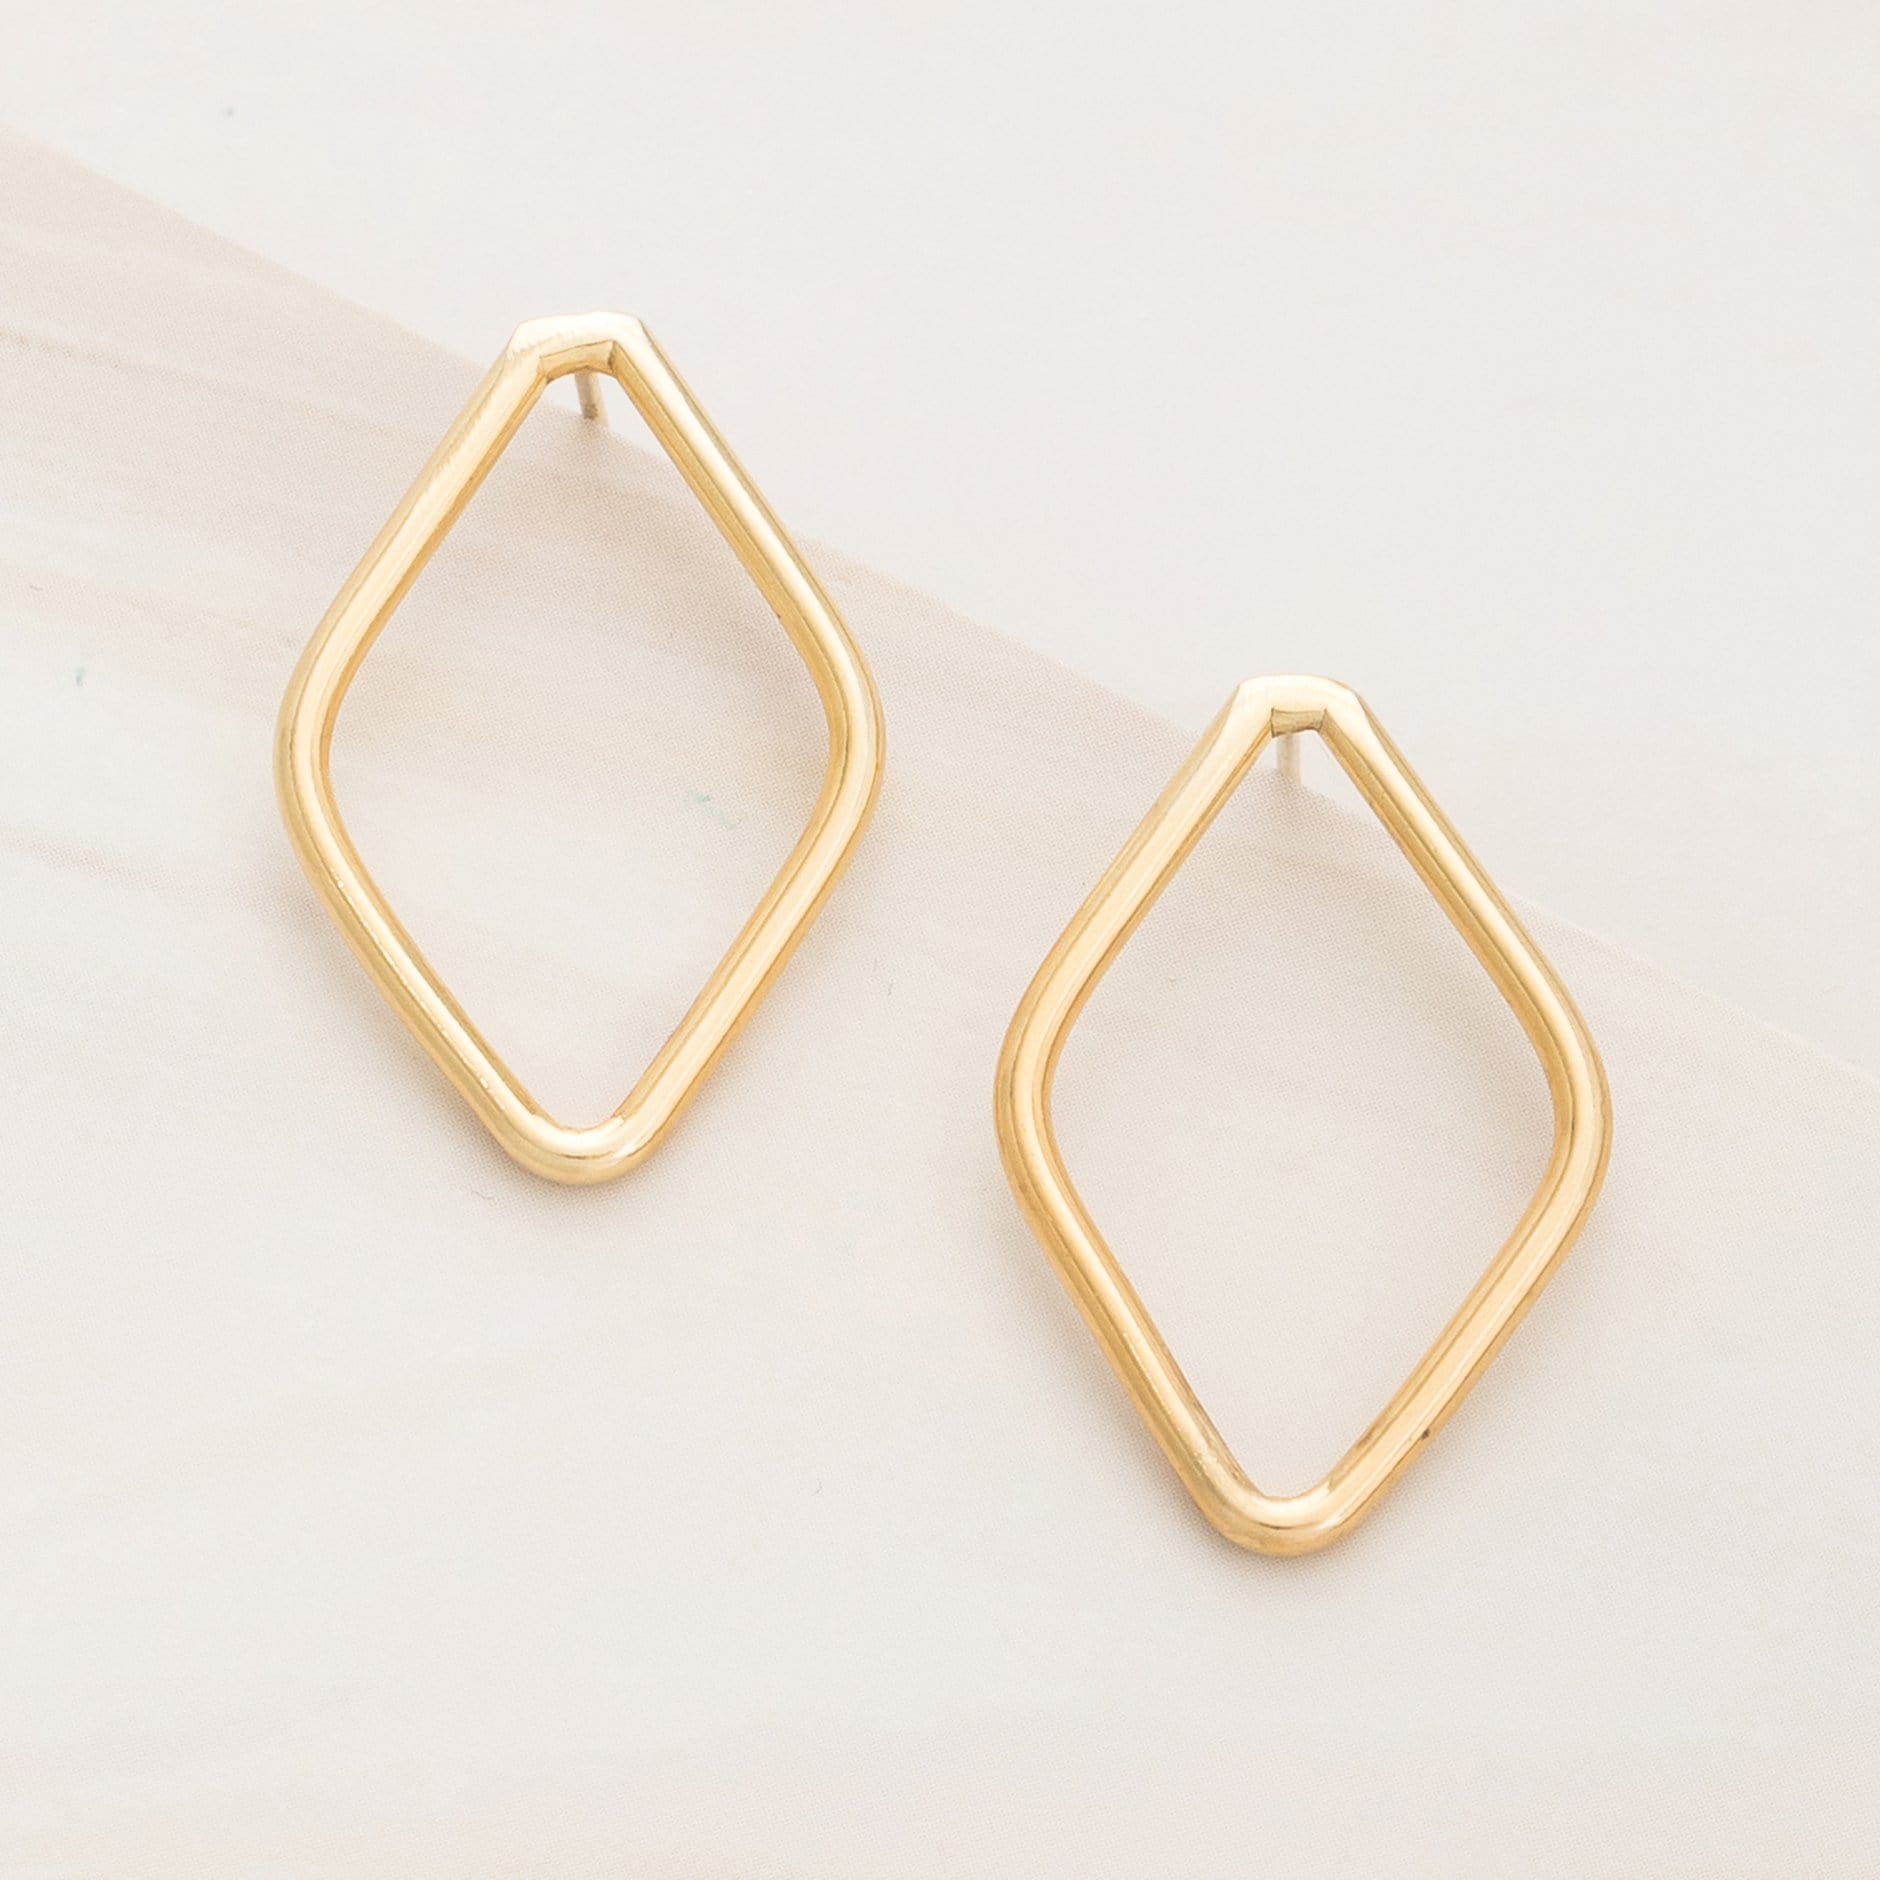 Emblem Jewelry Earrings Gold Tone Modern Geometry Rhombus Stud Earrings